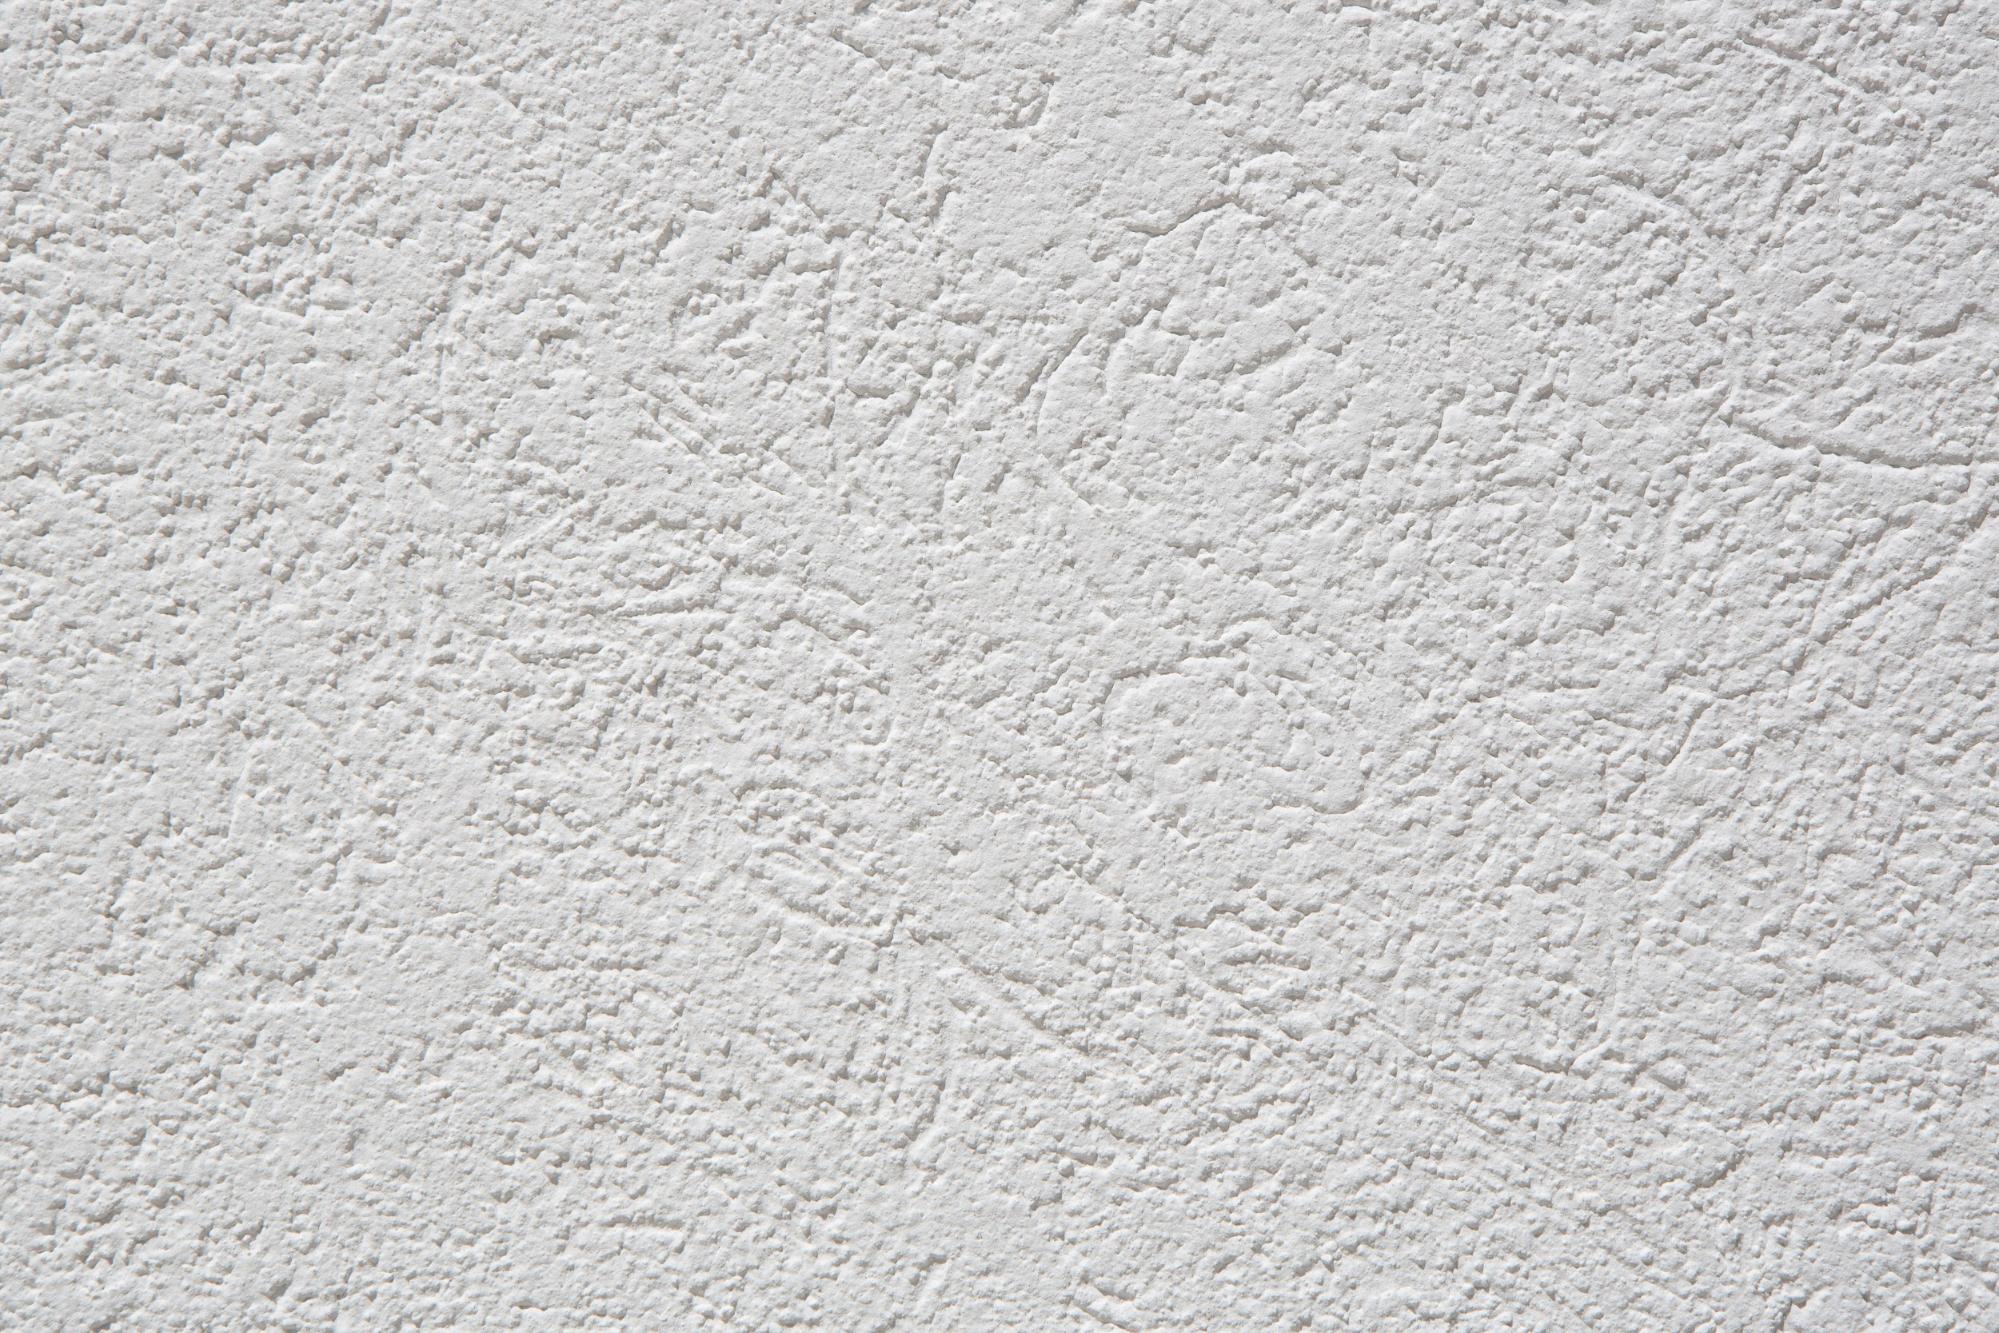 外壁 外壁材 の種類と特徴を比較 価格帯とそのメンテナンス法は 外壁 屋根塗装についてのお役立ち情報